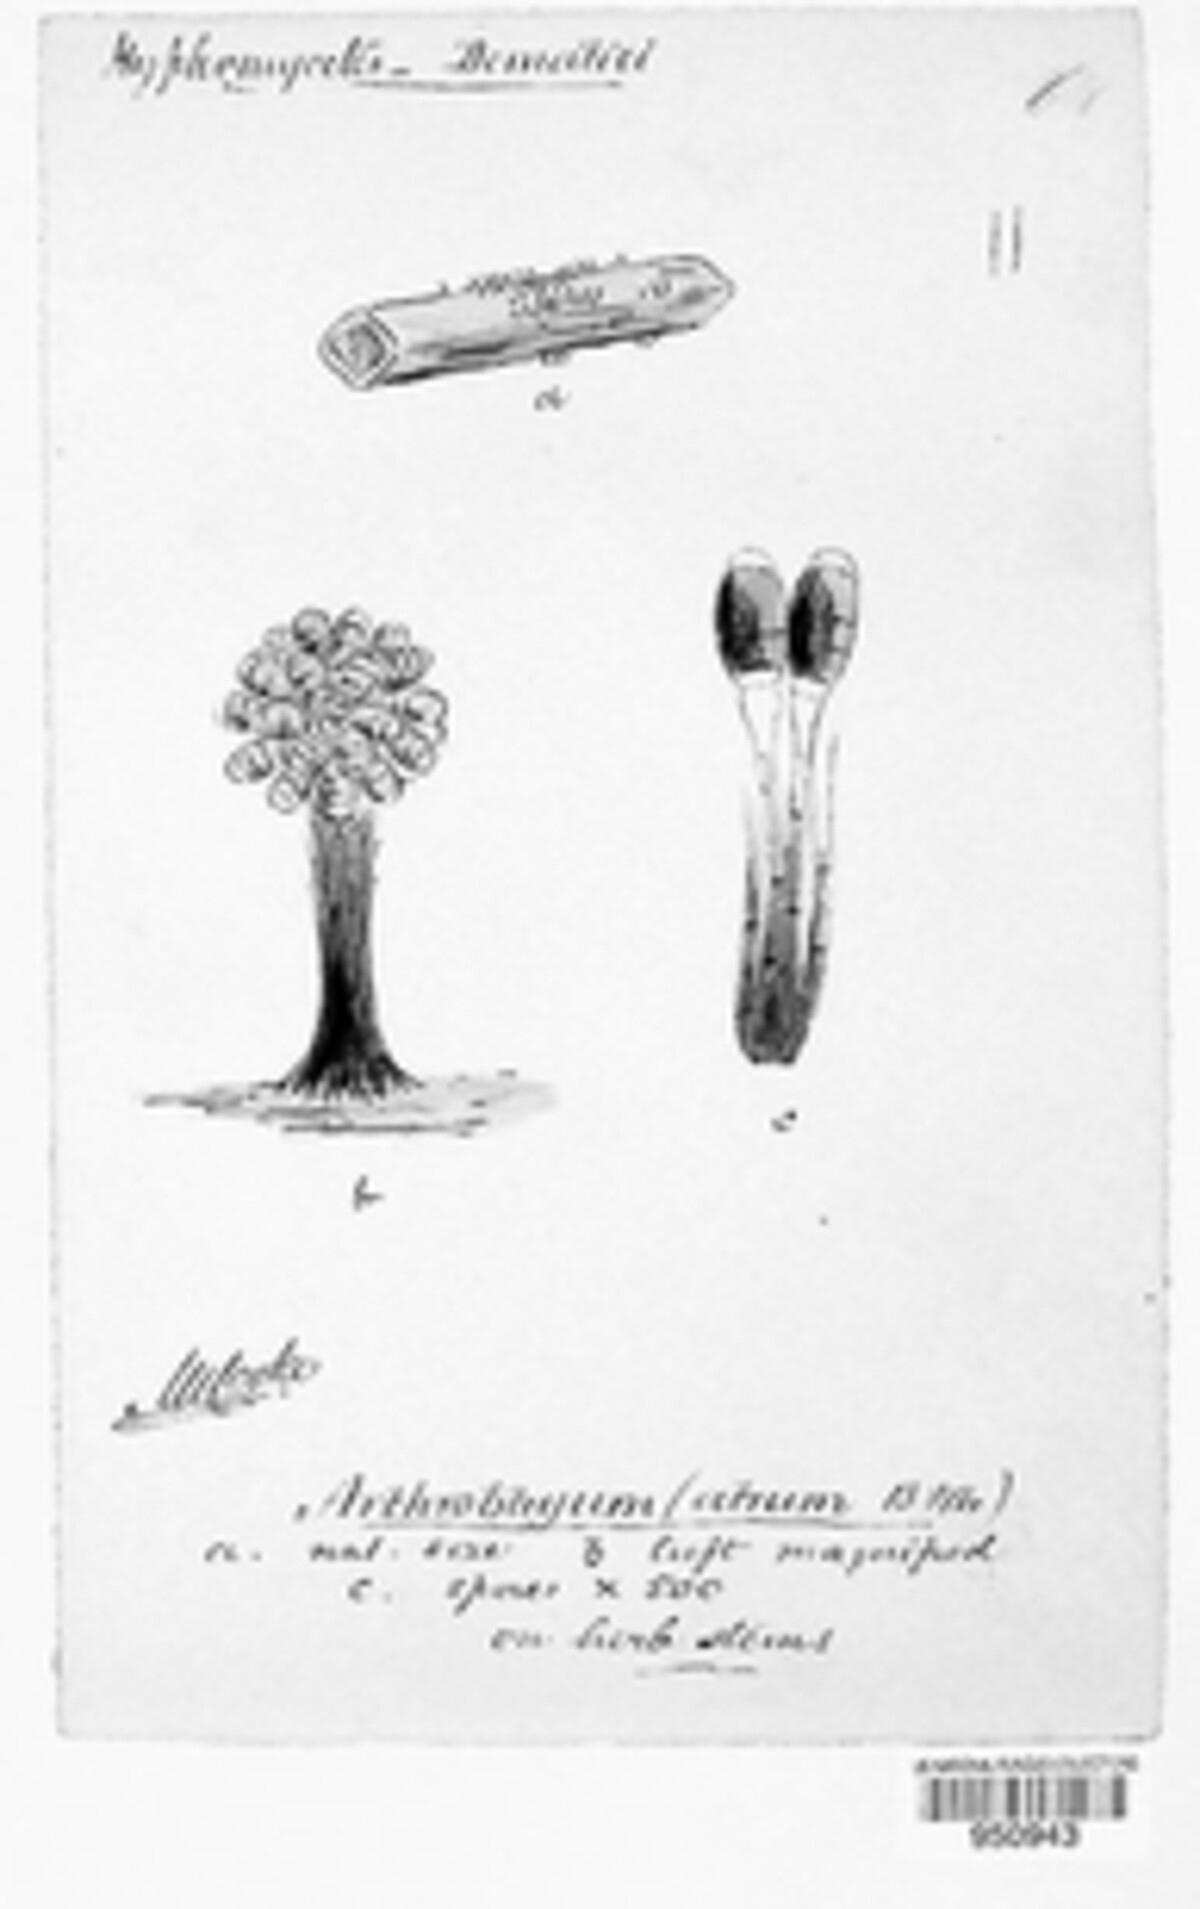 Phragmocephala image